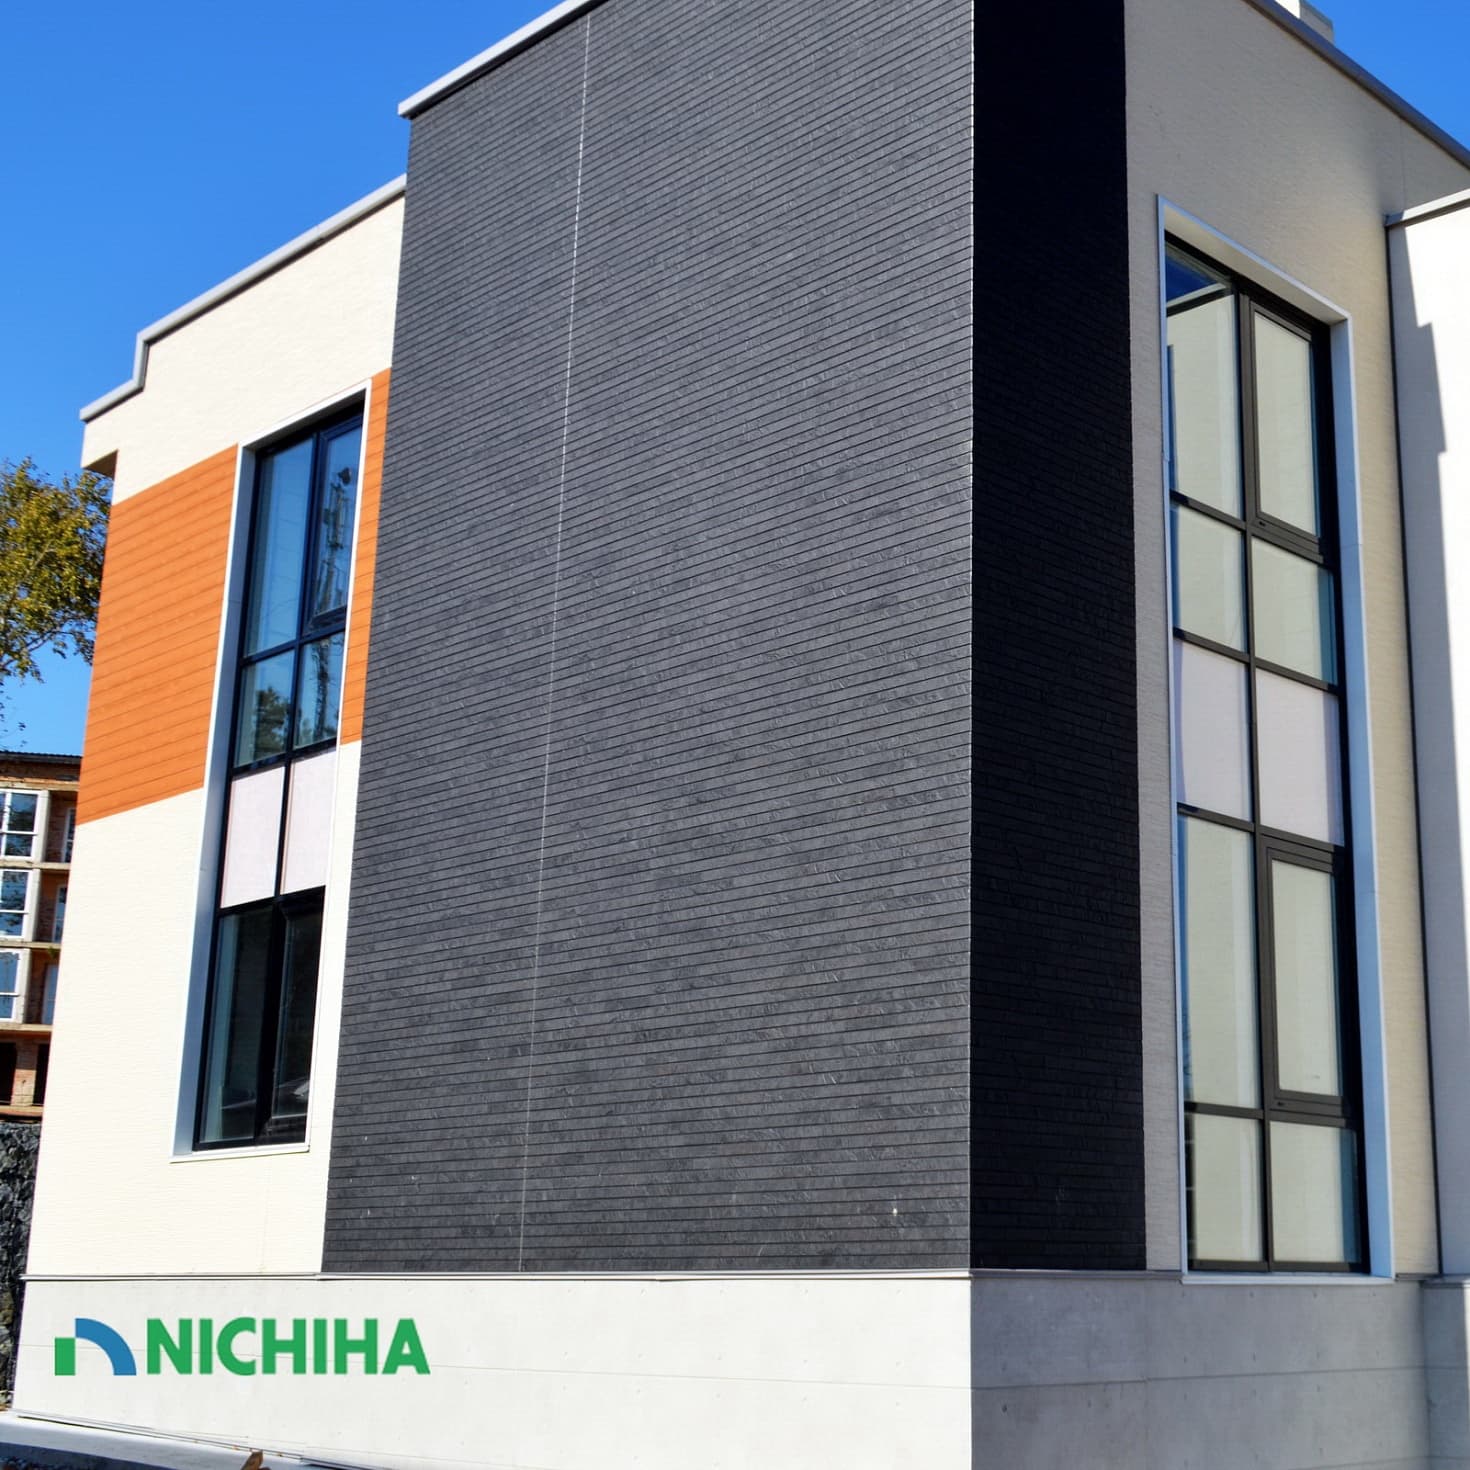 Фасадные панели nichiha фиброцементные панели нитиха ркс официальный дилер ничиха японские фасады облицовка домов